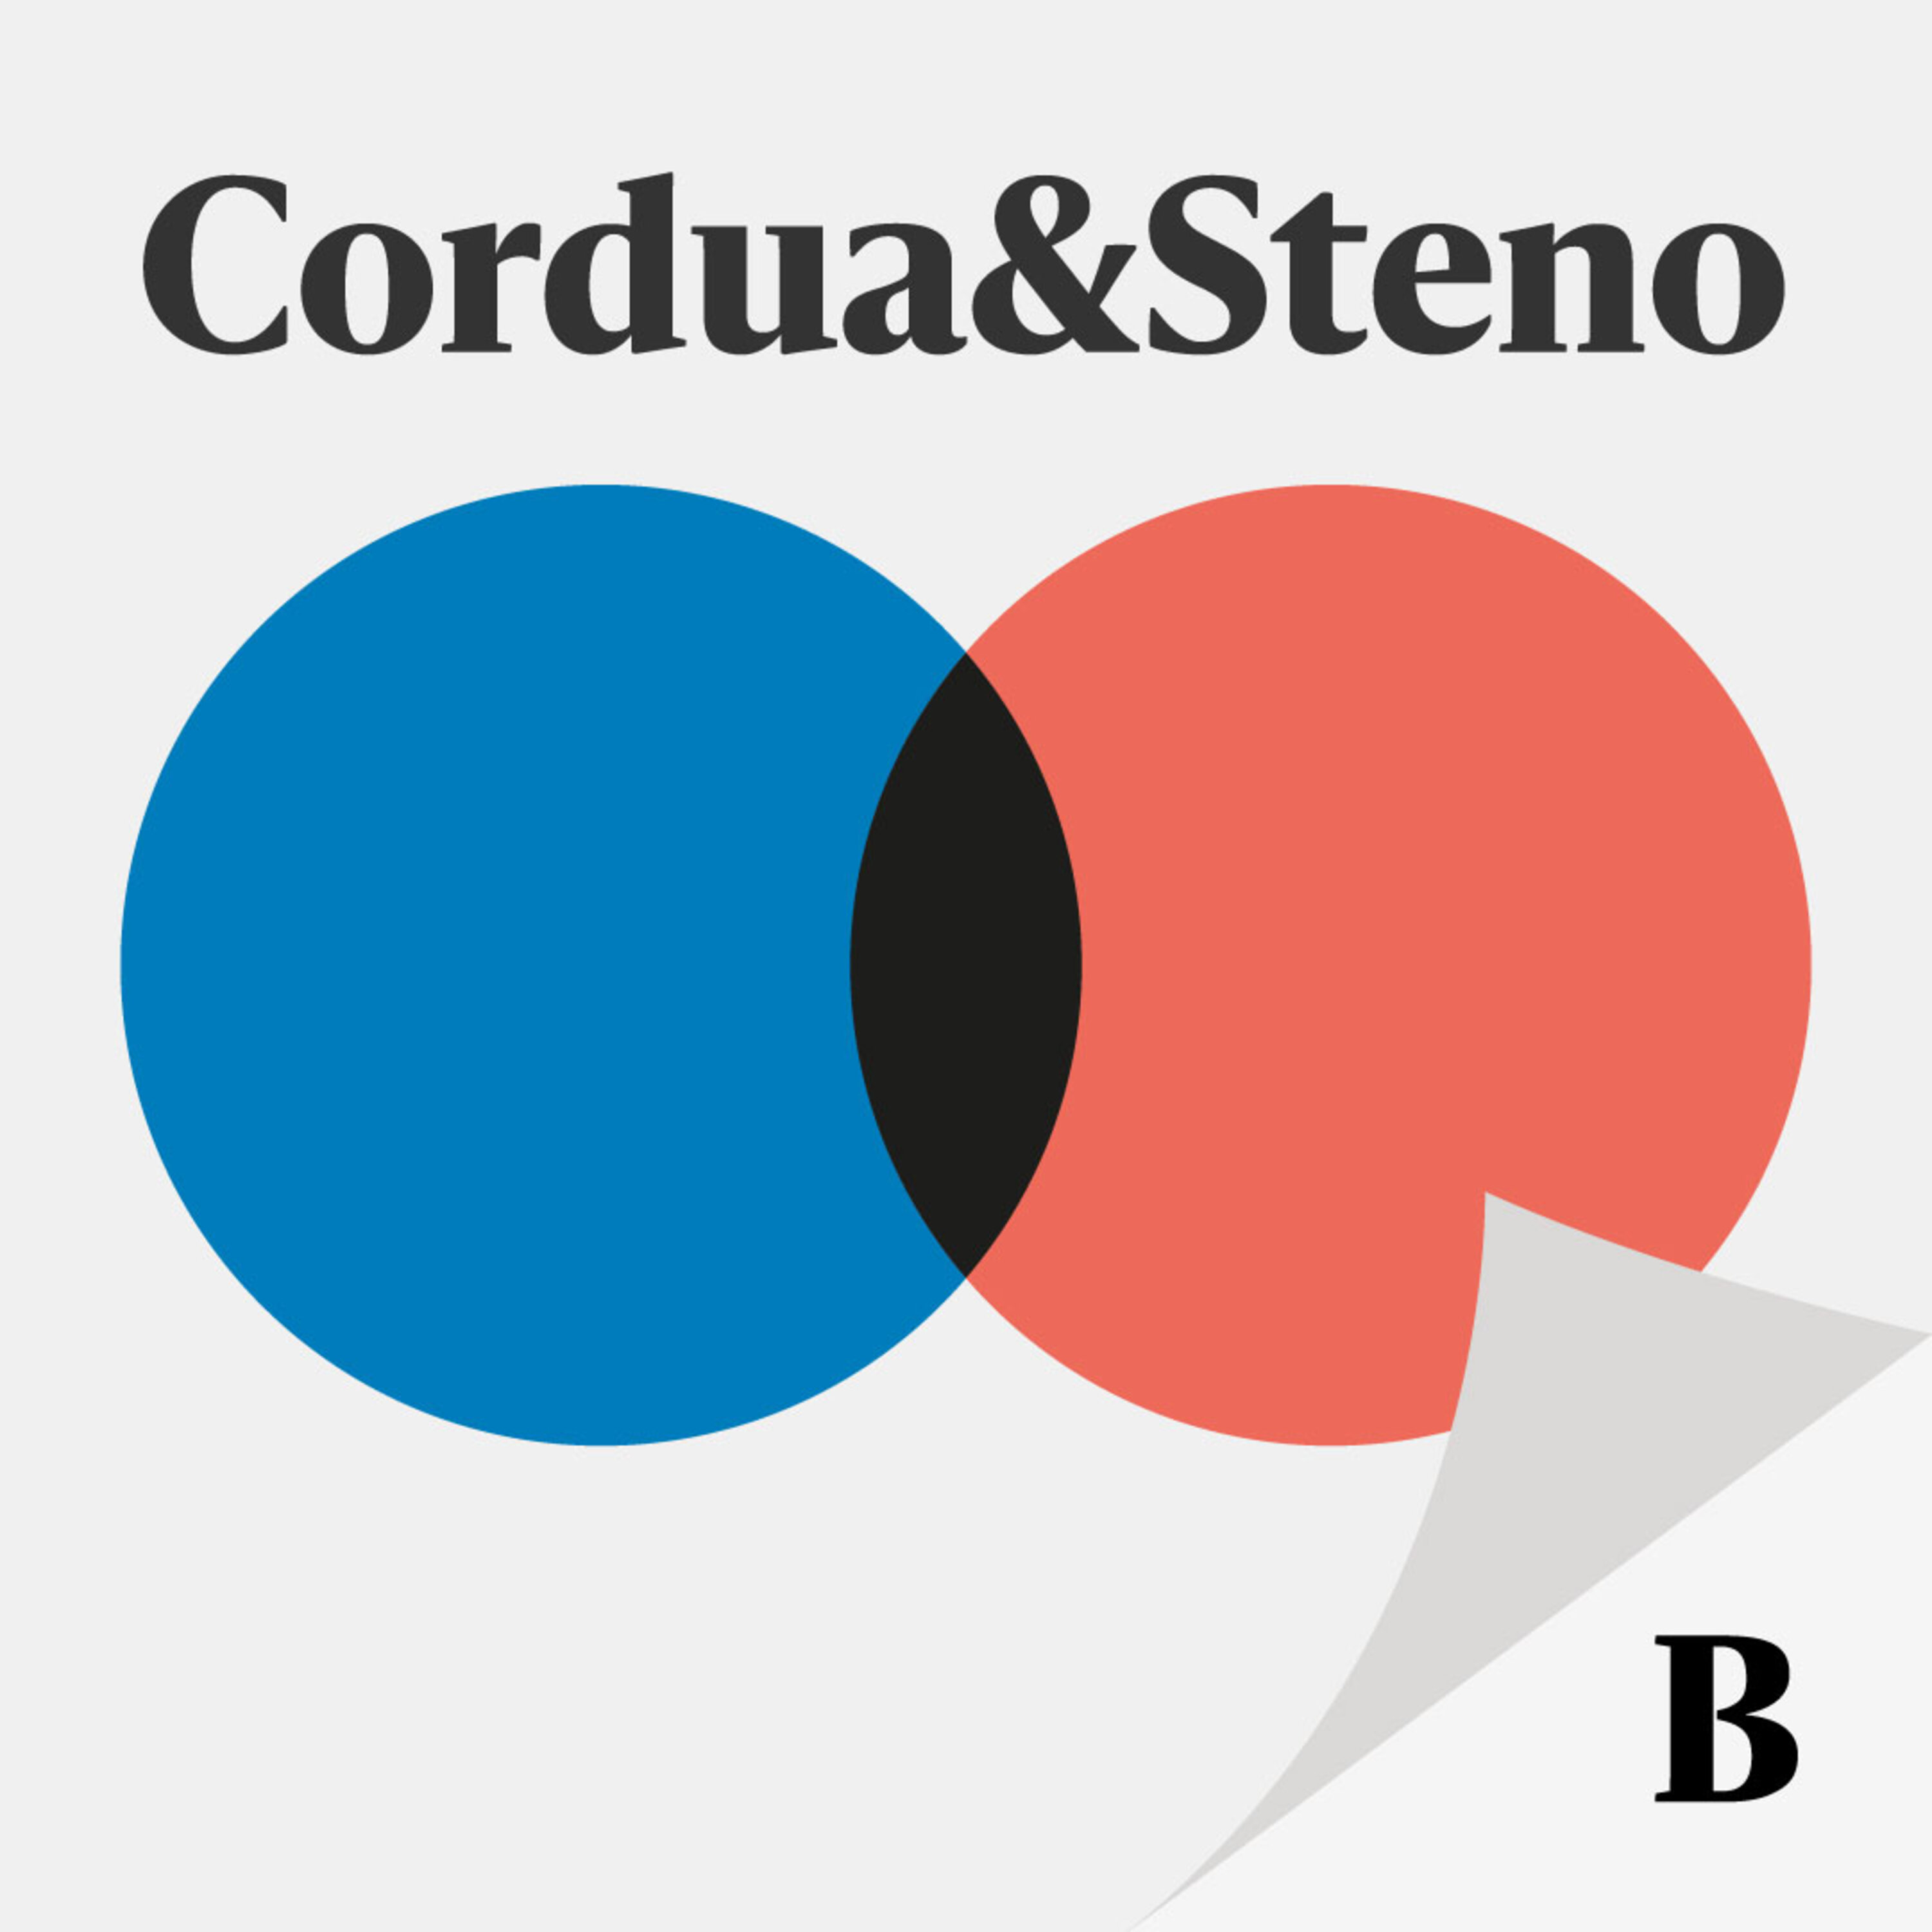 Cordua & Stenos valgspecial:  Ny på Tinge – og hvad så?